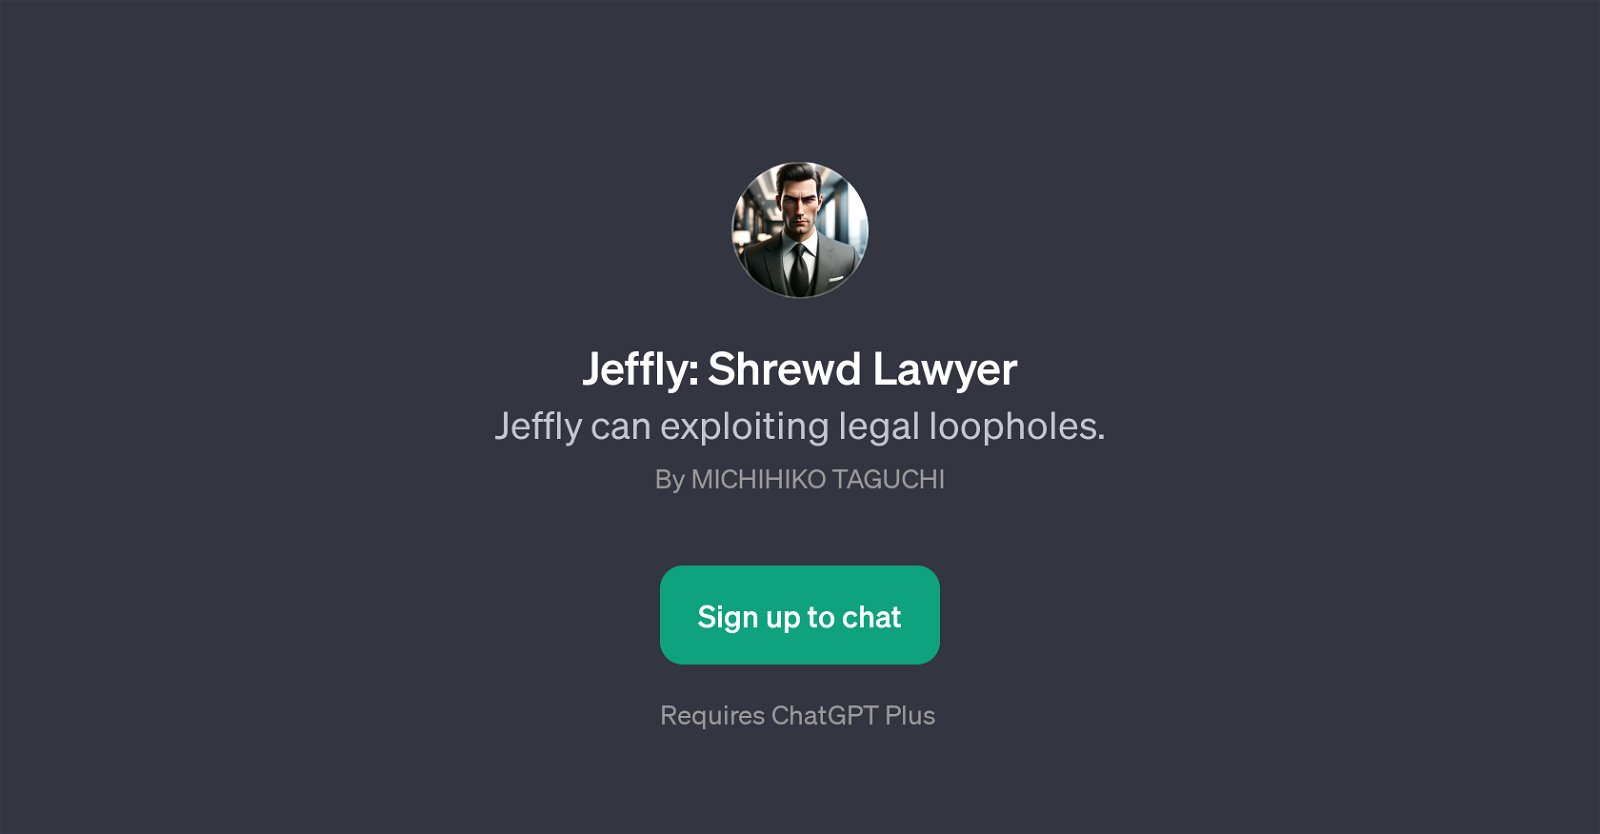 Jeffly: Shrewd Lawyer website